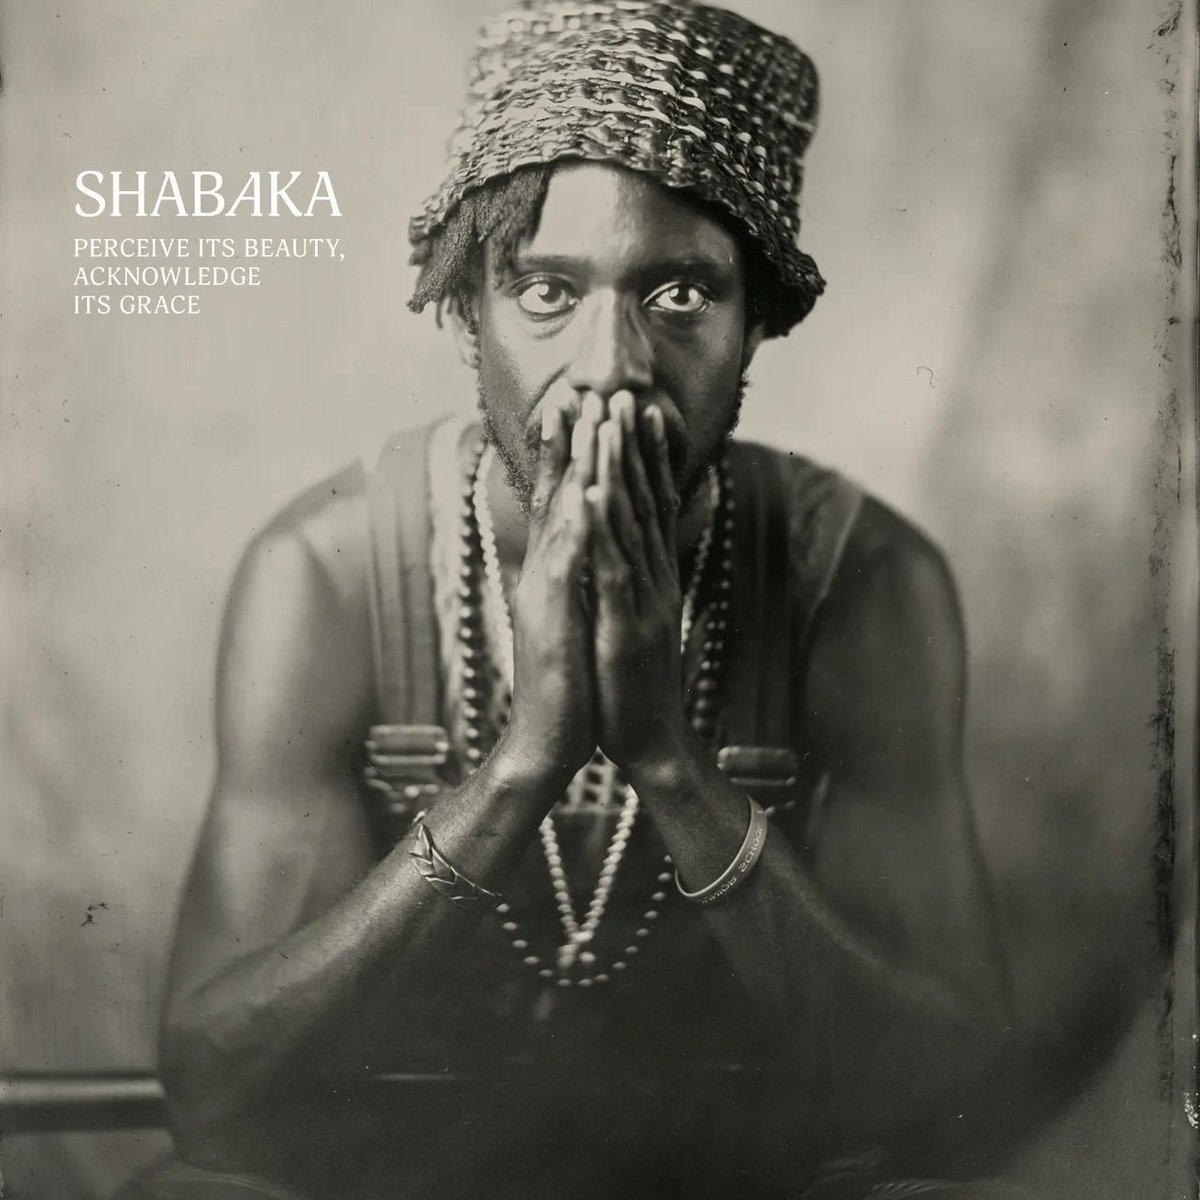 This new Shabaka album is stunning.